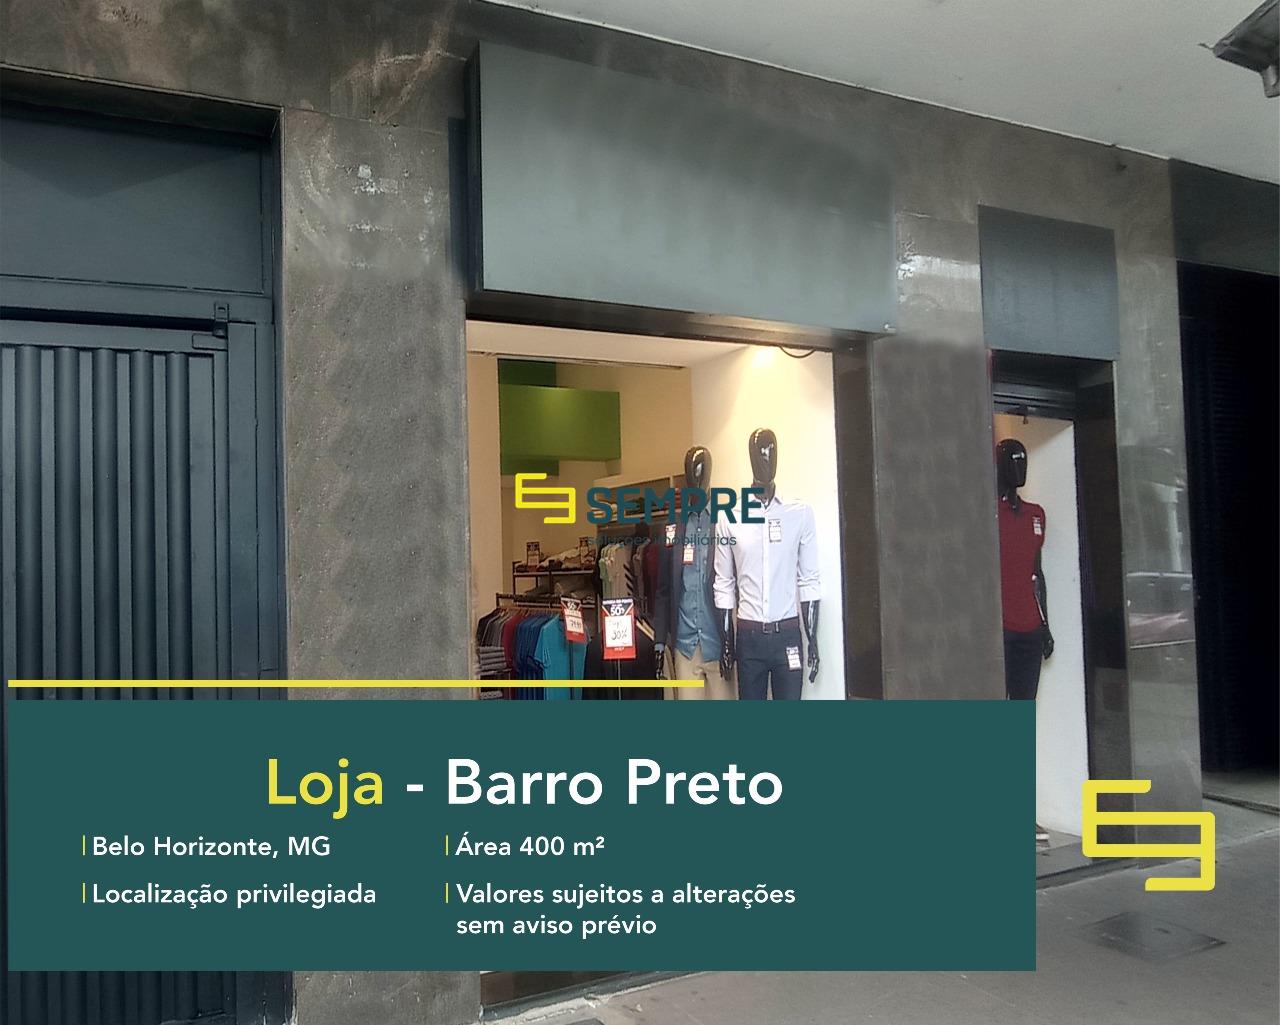 Loja para alugar no Barro Preto em excelente localização em Belo Horizonte. O estabelecimento comercial conta, sobretudo, com área de 400 m².